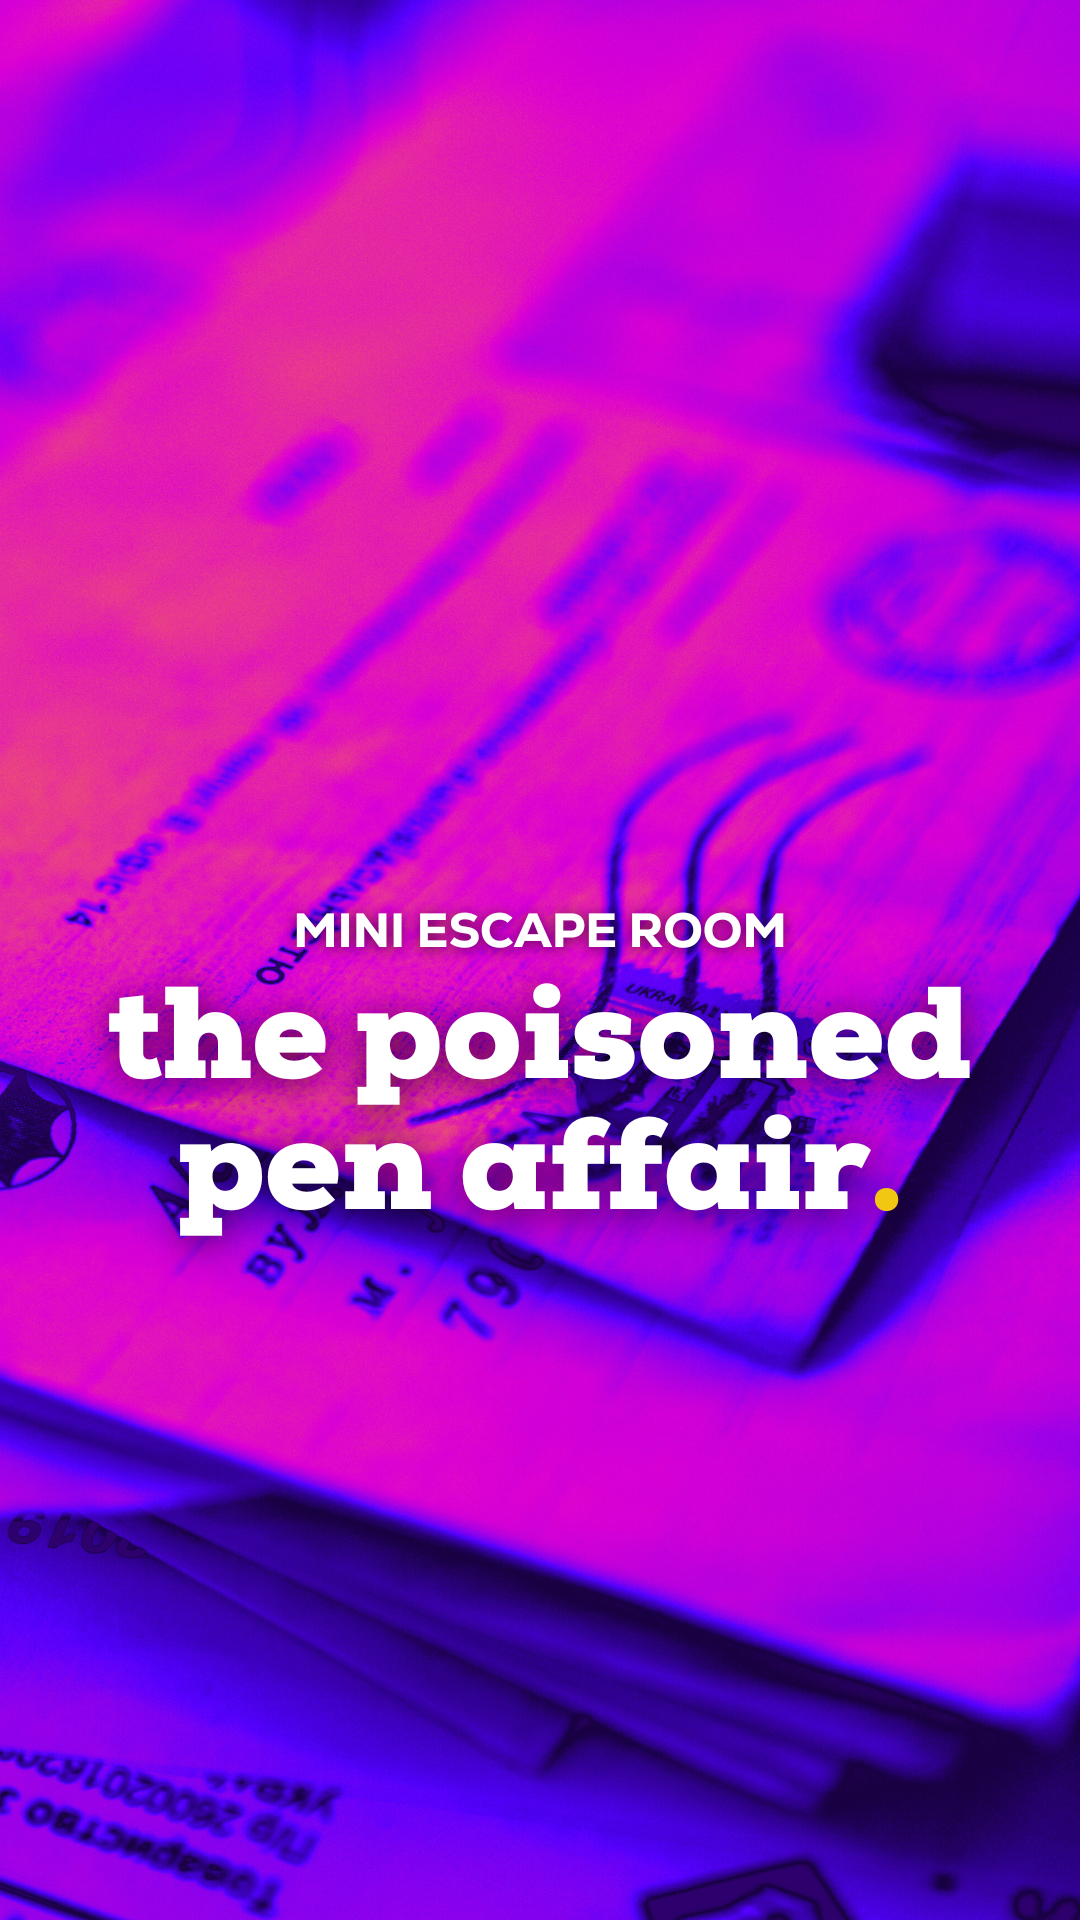 the poisoned pen affair.